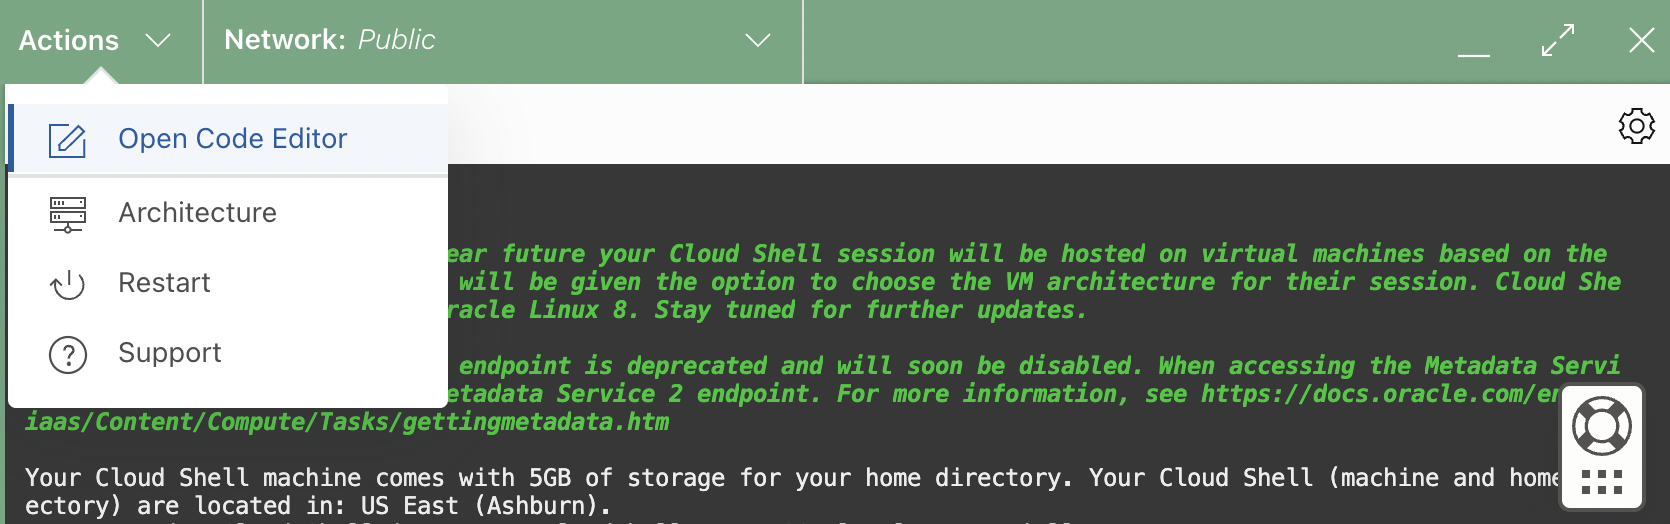 Cloud Shell architecture action menu